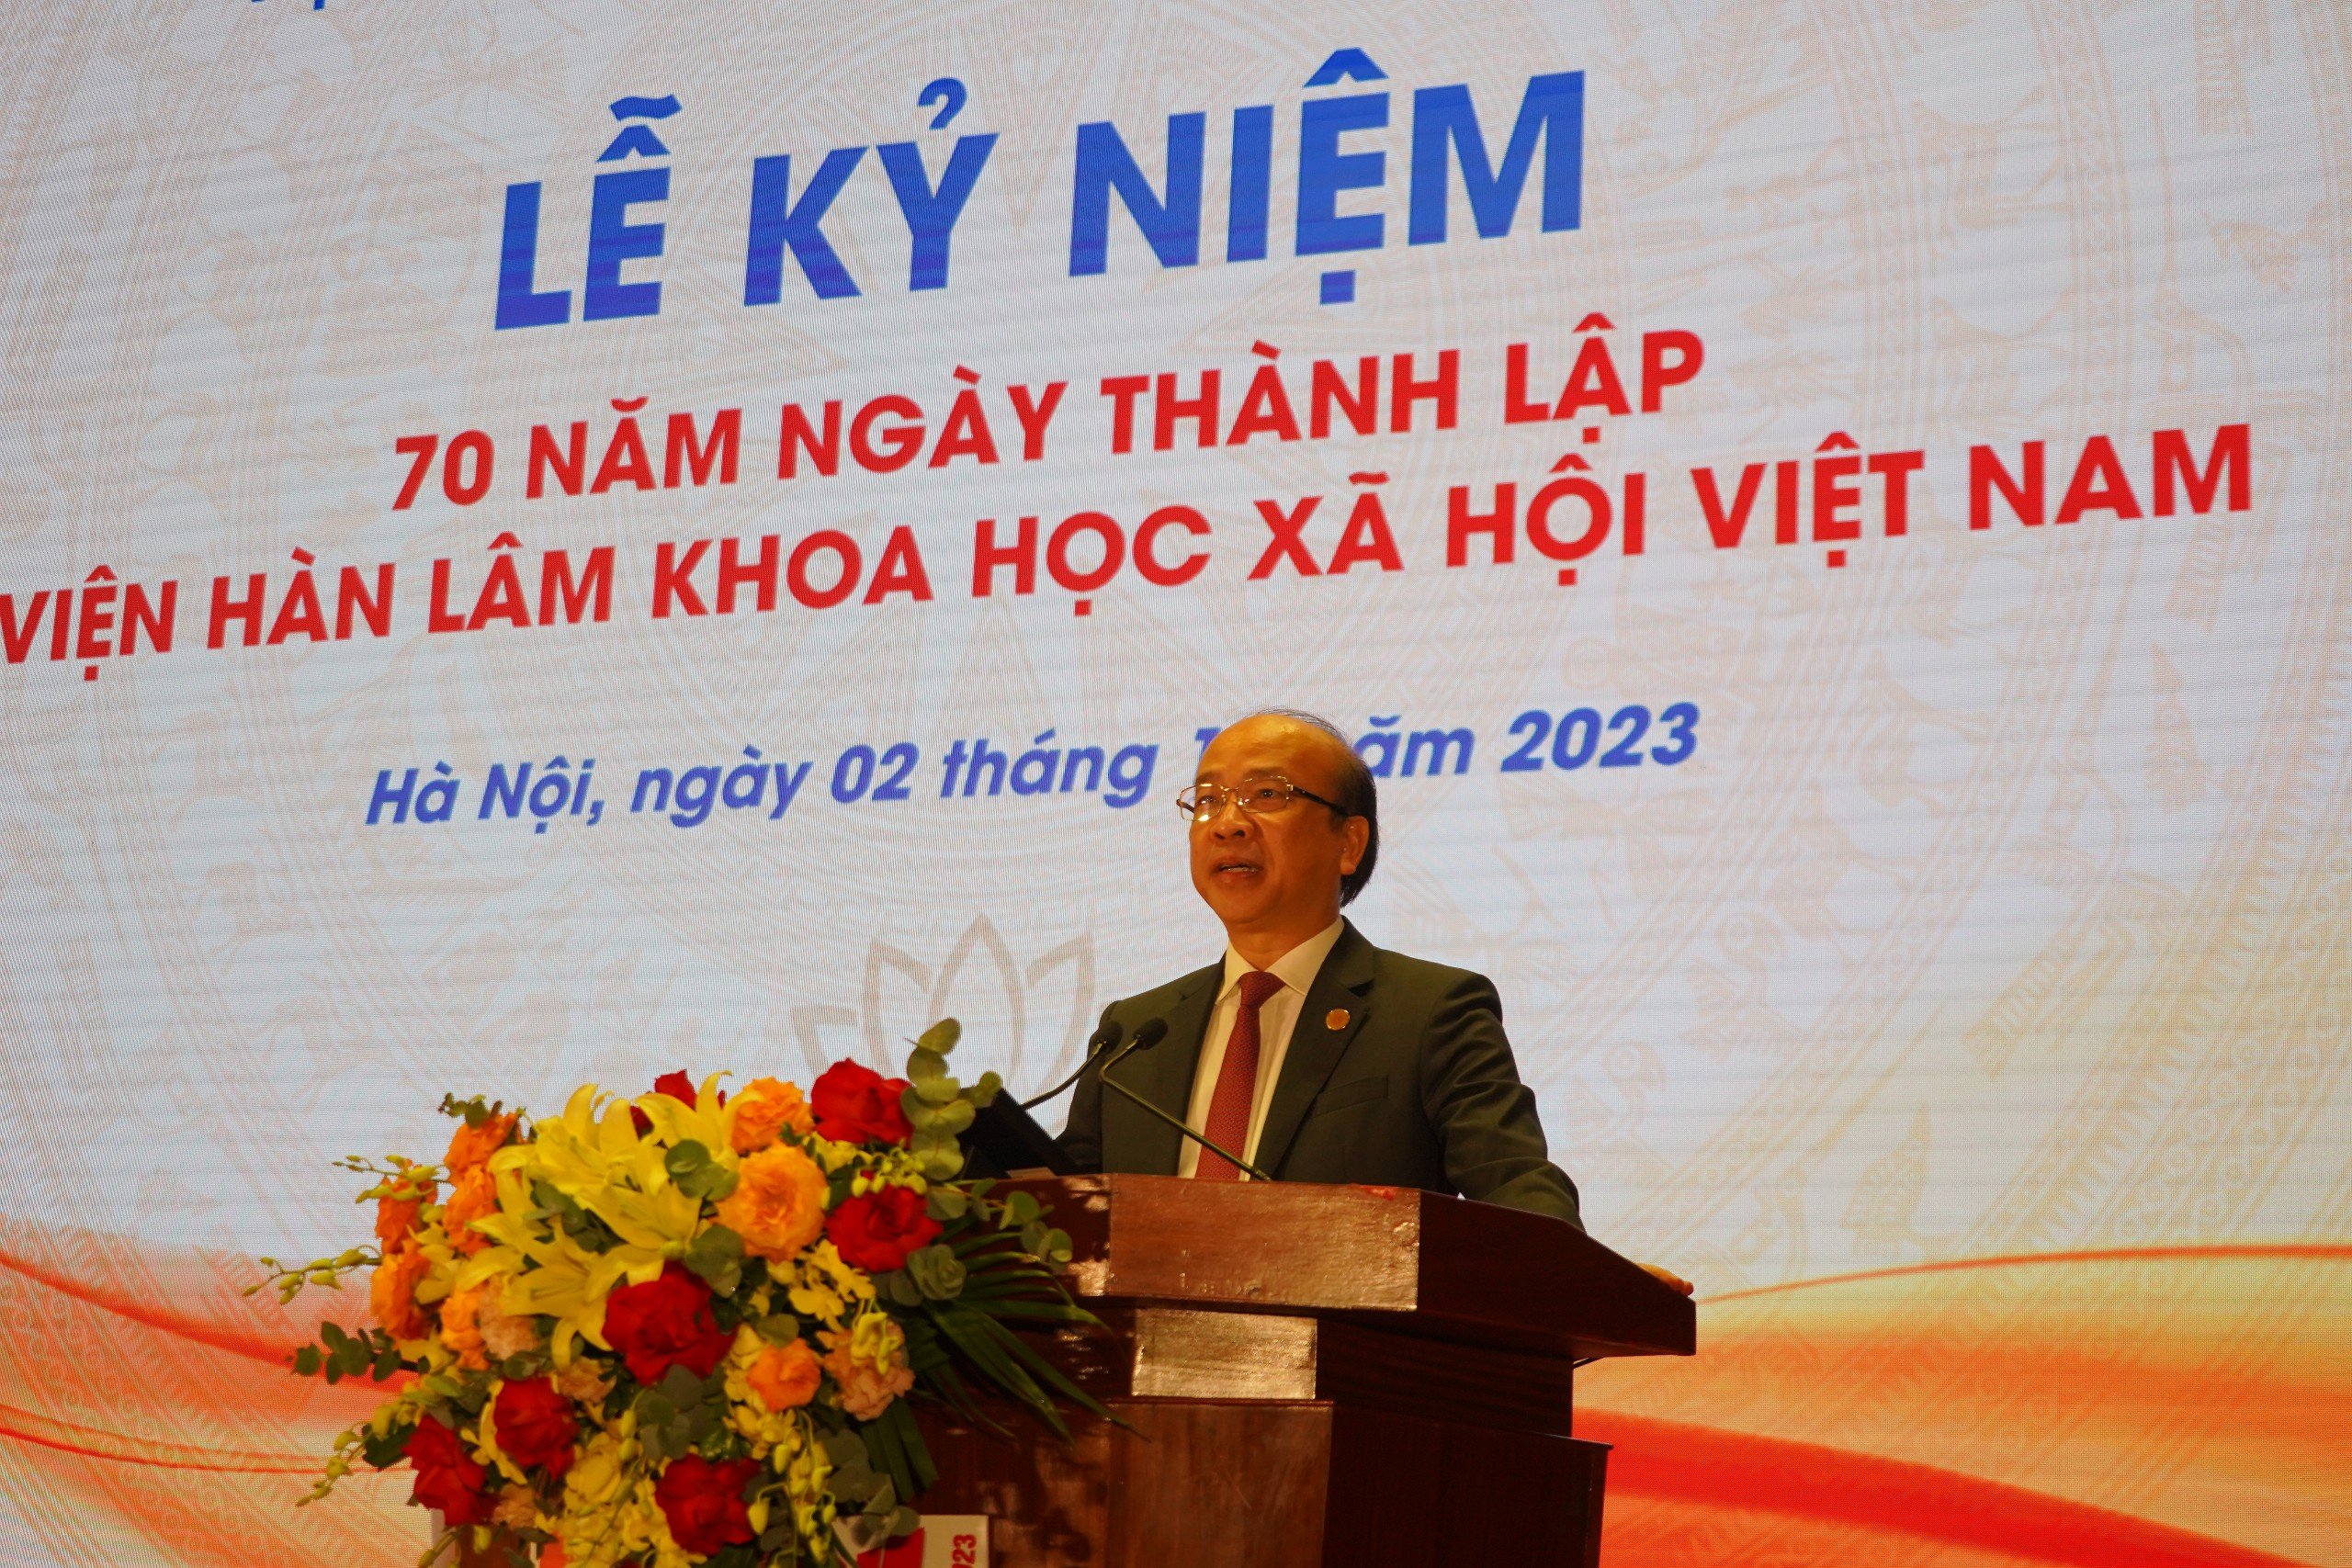 Phát triển Viện Hàn lâm Khoa học xã hội Việt Nam thành trung tâm nghiên cứu trọng điểm